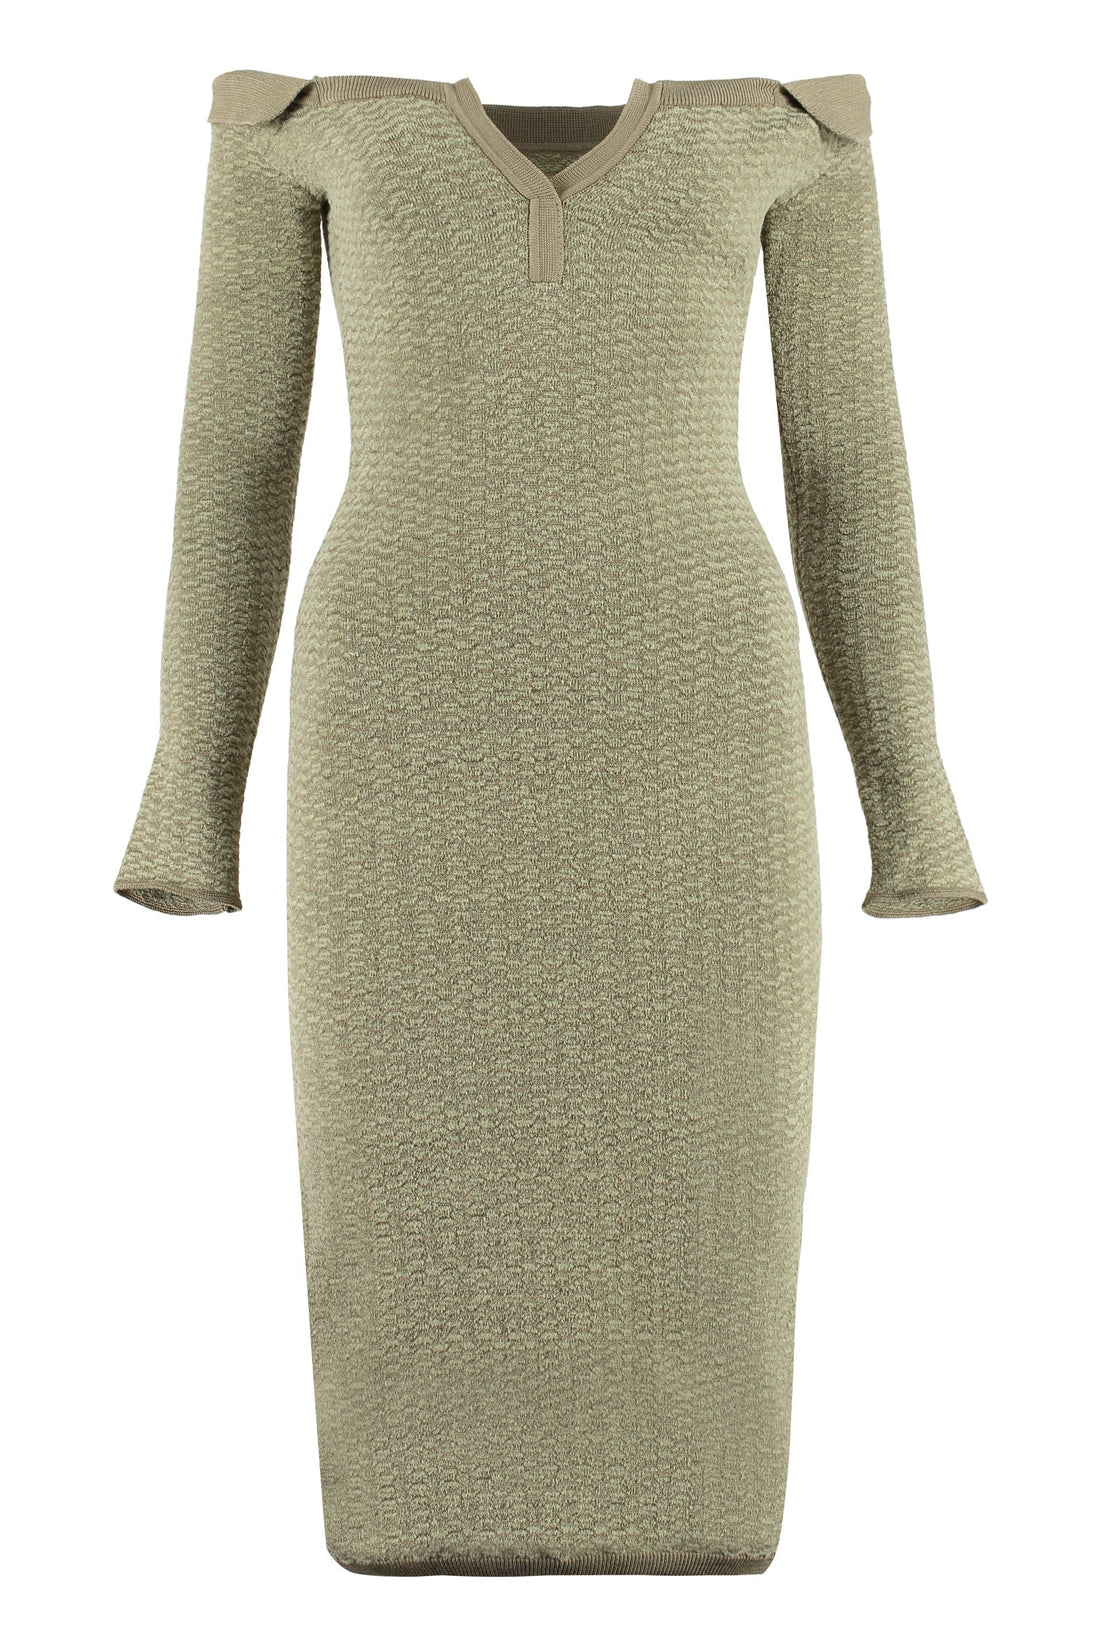 Jacquemus-OUTLET-SALE-Pampero cotton dress-ARCHIVIST